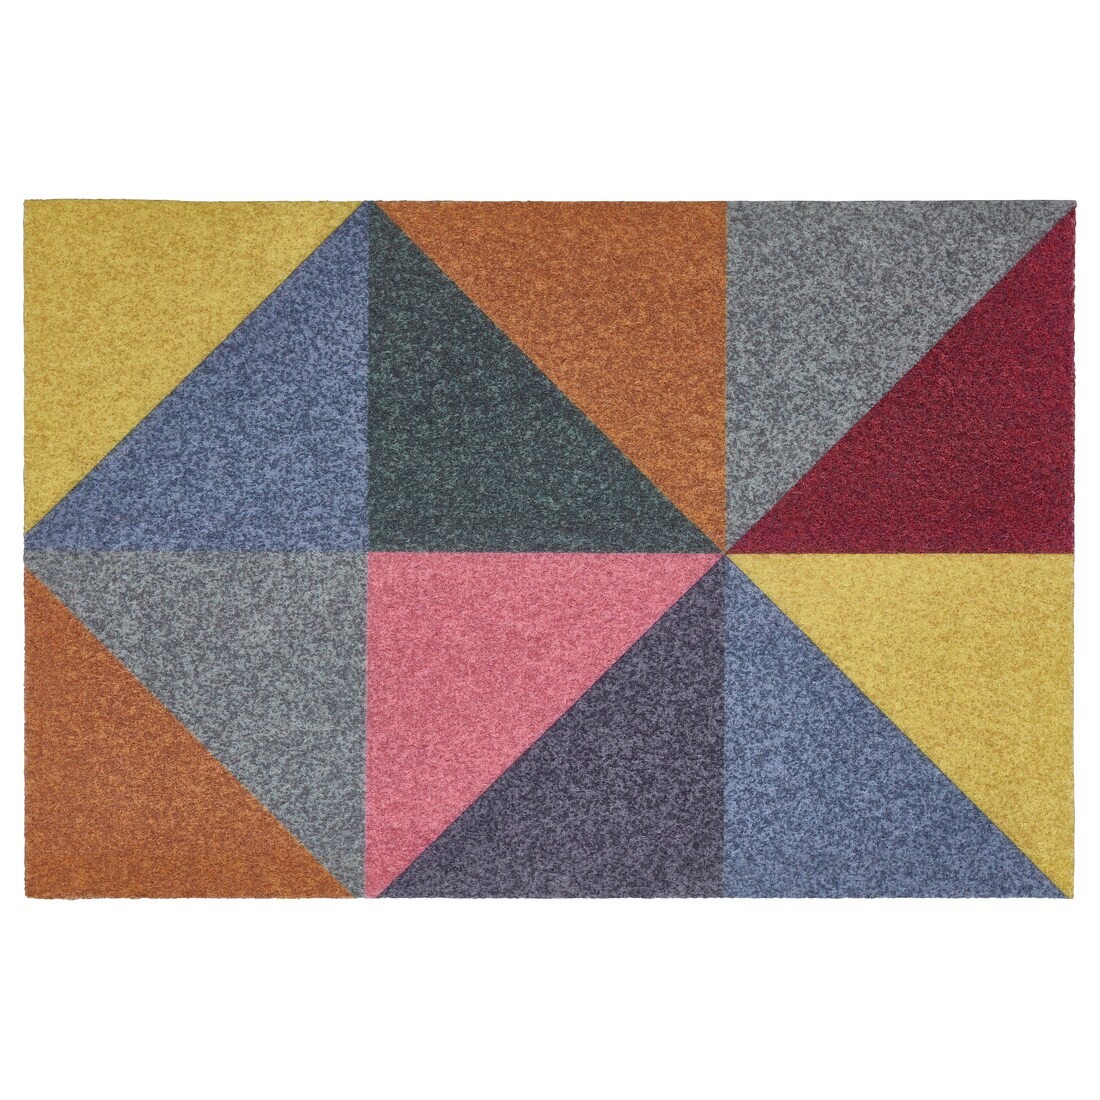 CYKELBANA Придверный коврик, разноцветный, 40x60 см